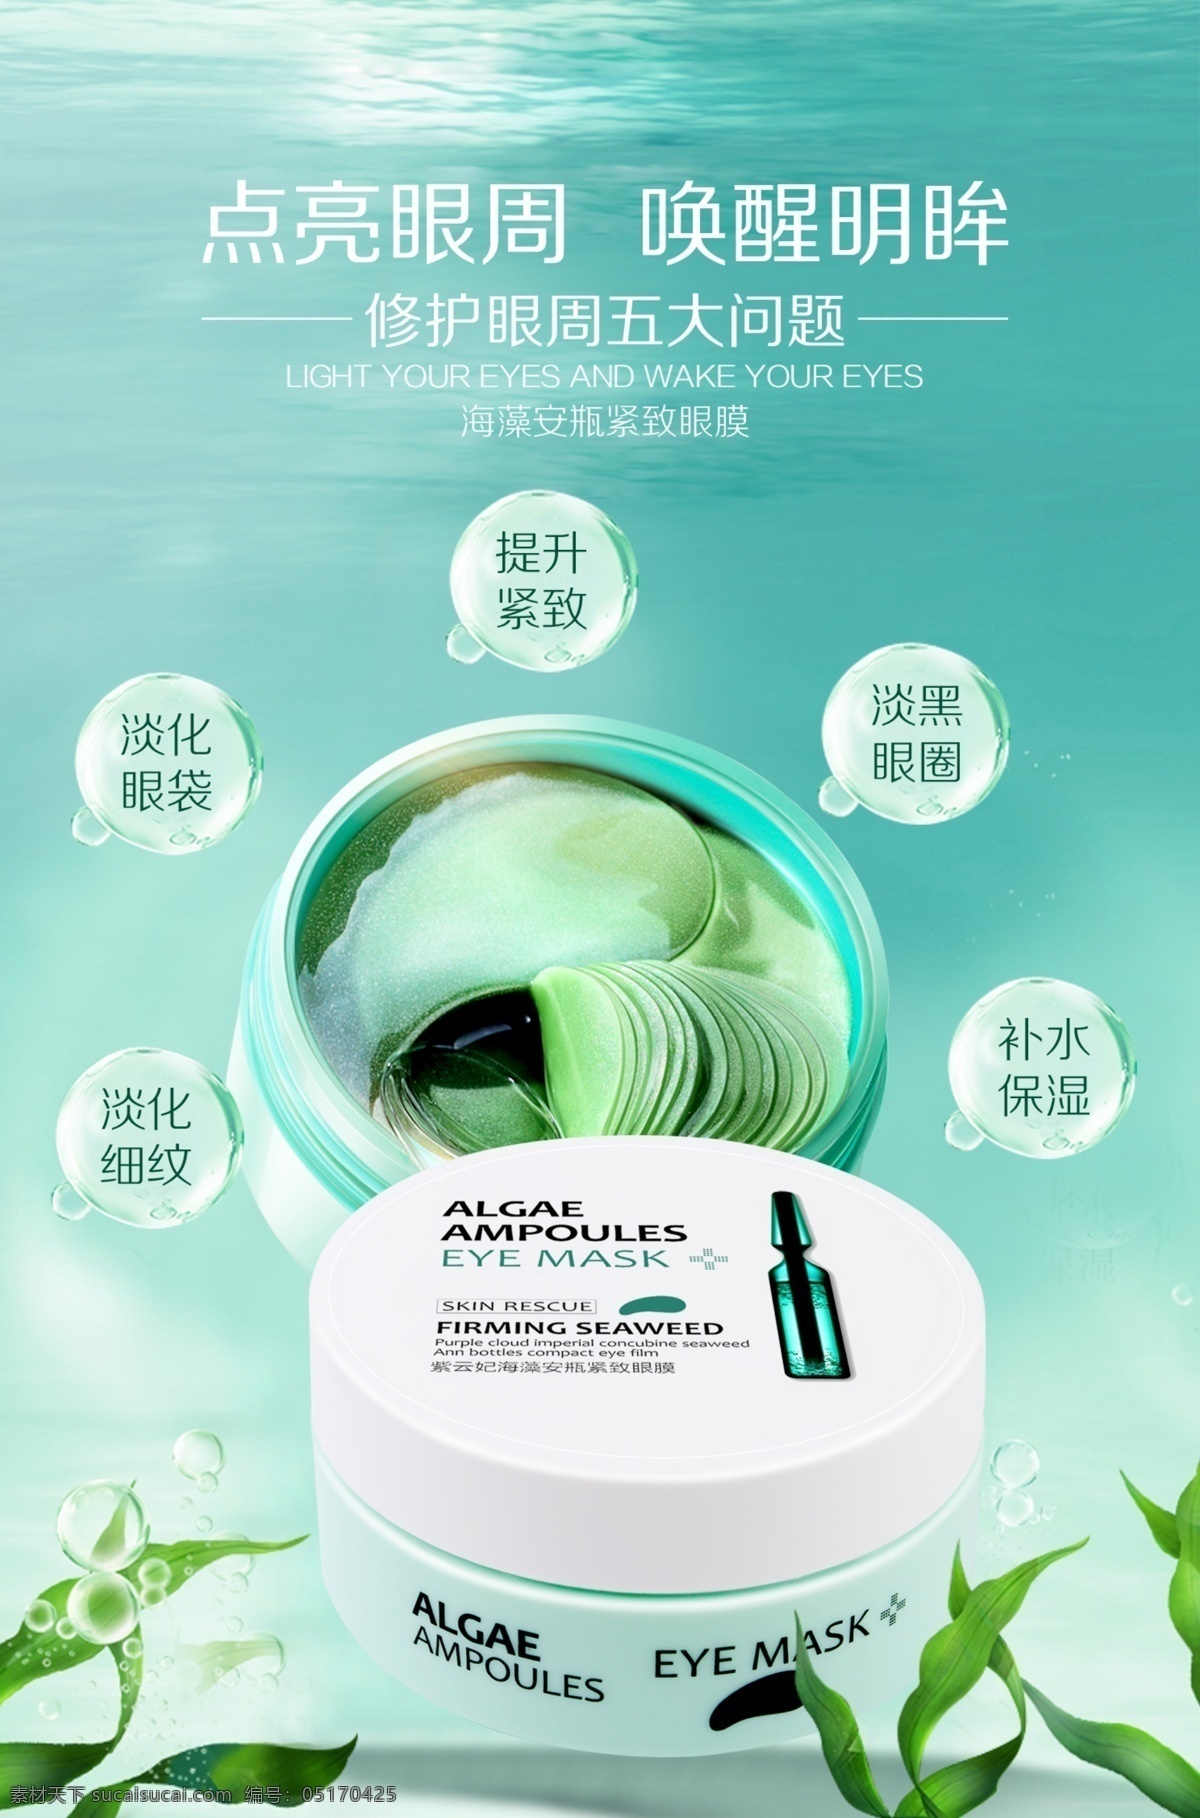 海藻 安 瓶 紧 致 眼膜 宣传 广告 图 眼膜广告 化妆品海报 眼膜素材 化妆品素材 眼膜海报